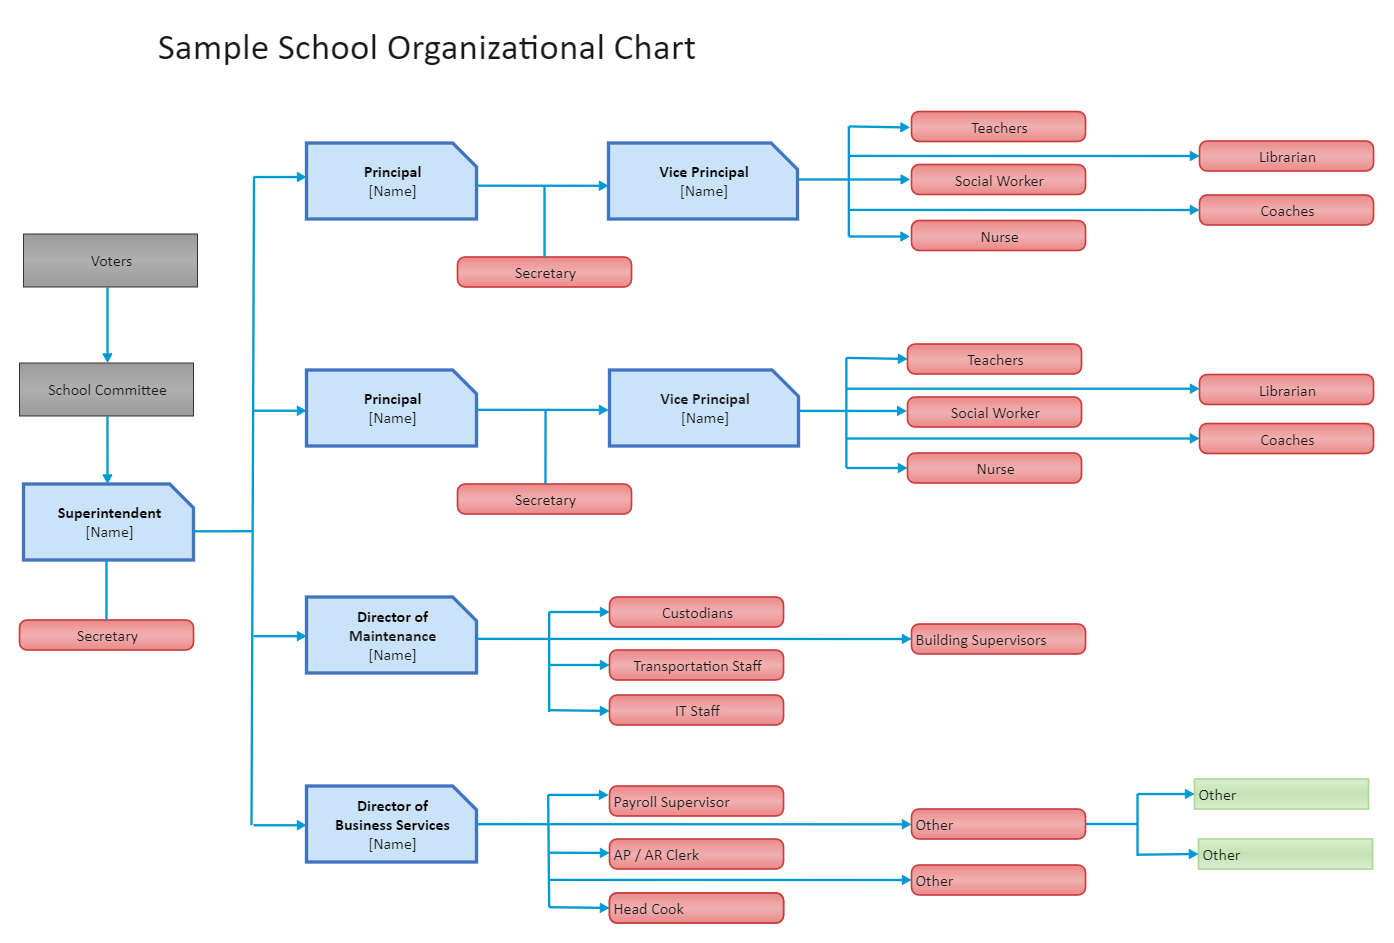 Hierarchy of the School